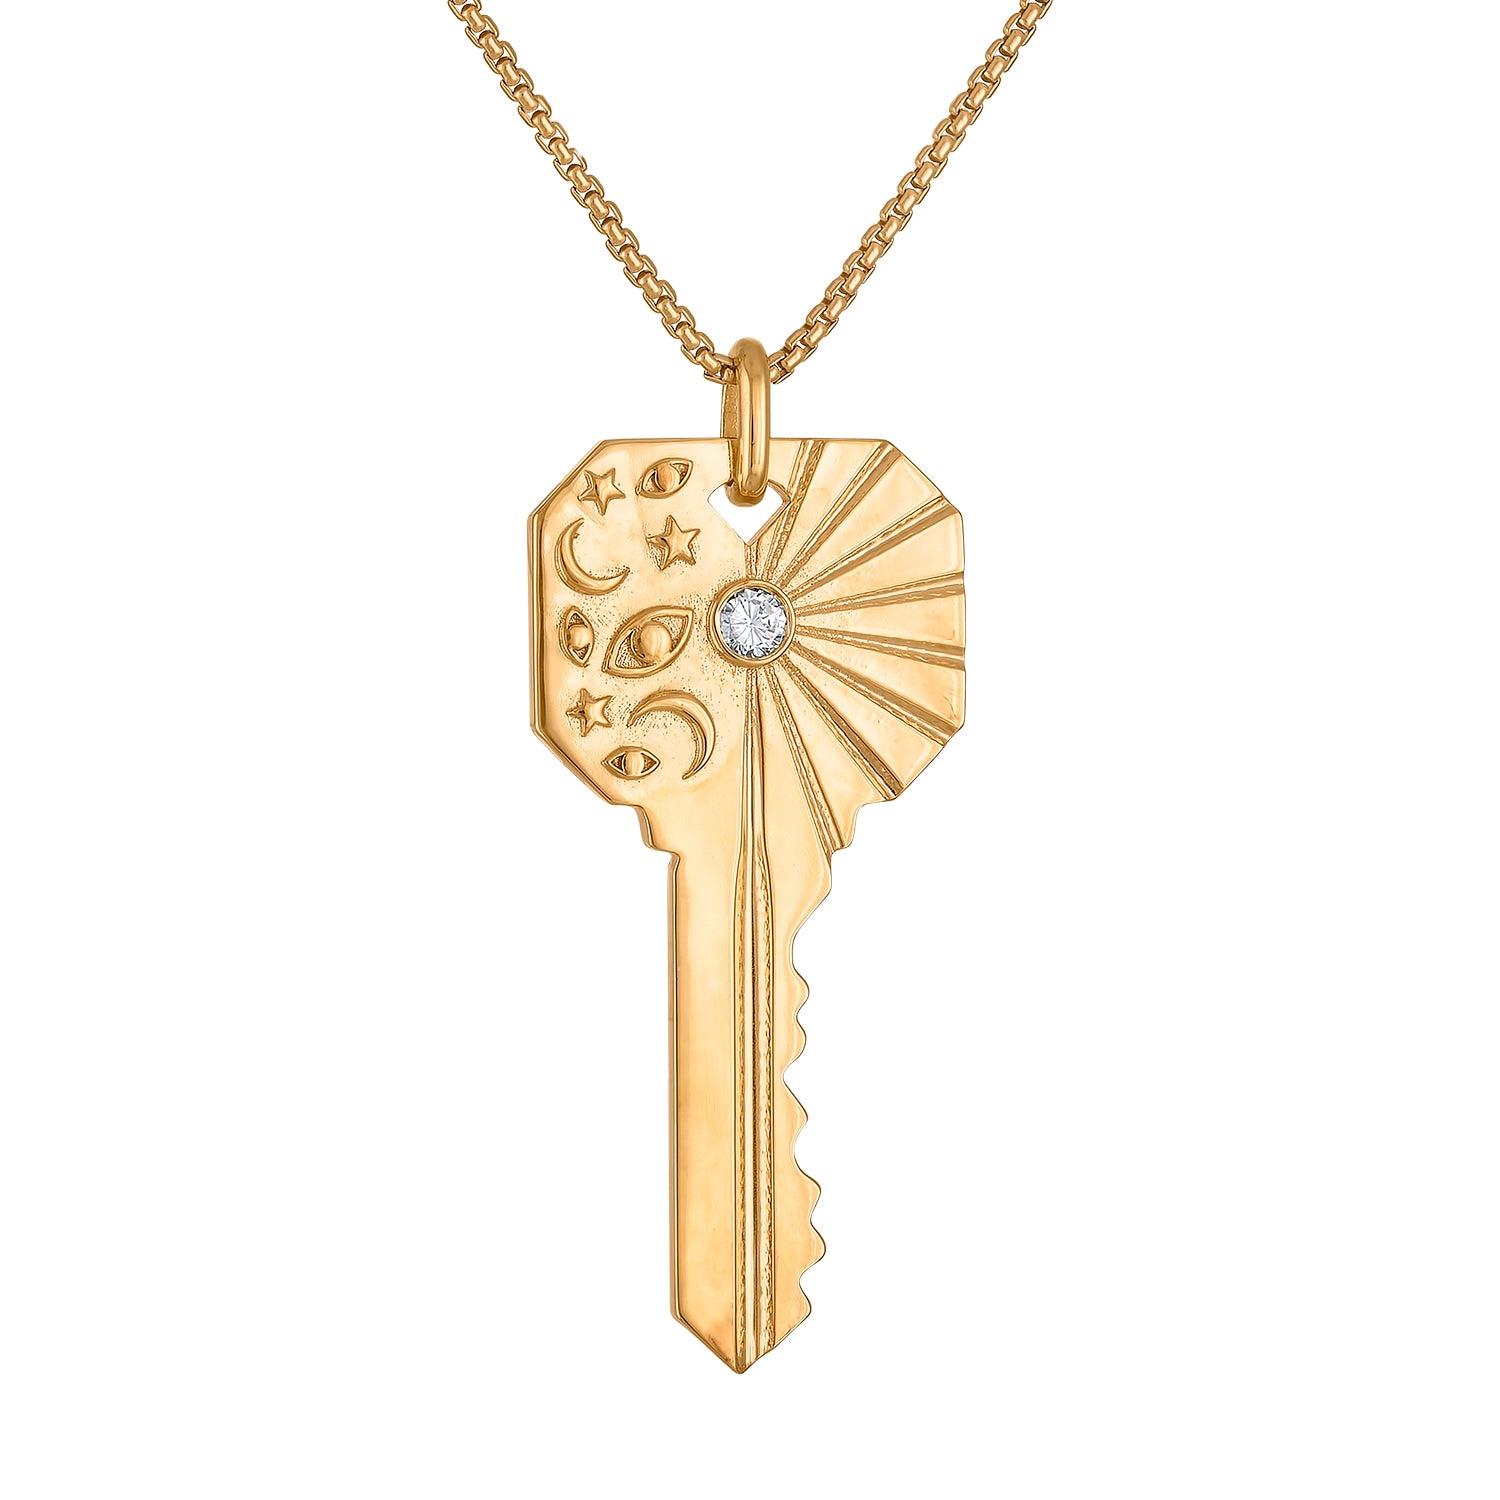 Cosmos Key Necklace